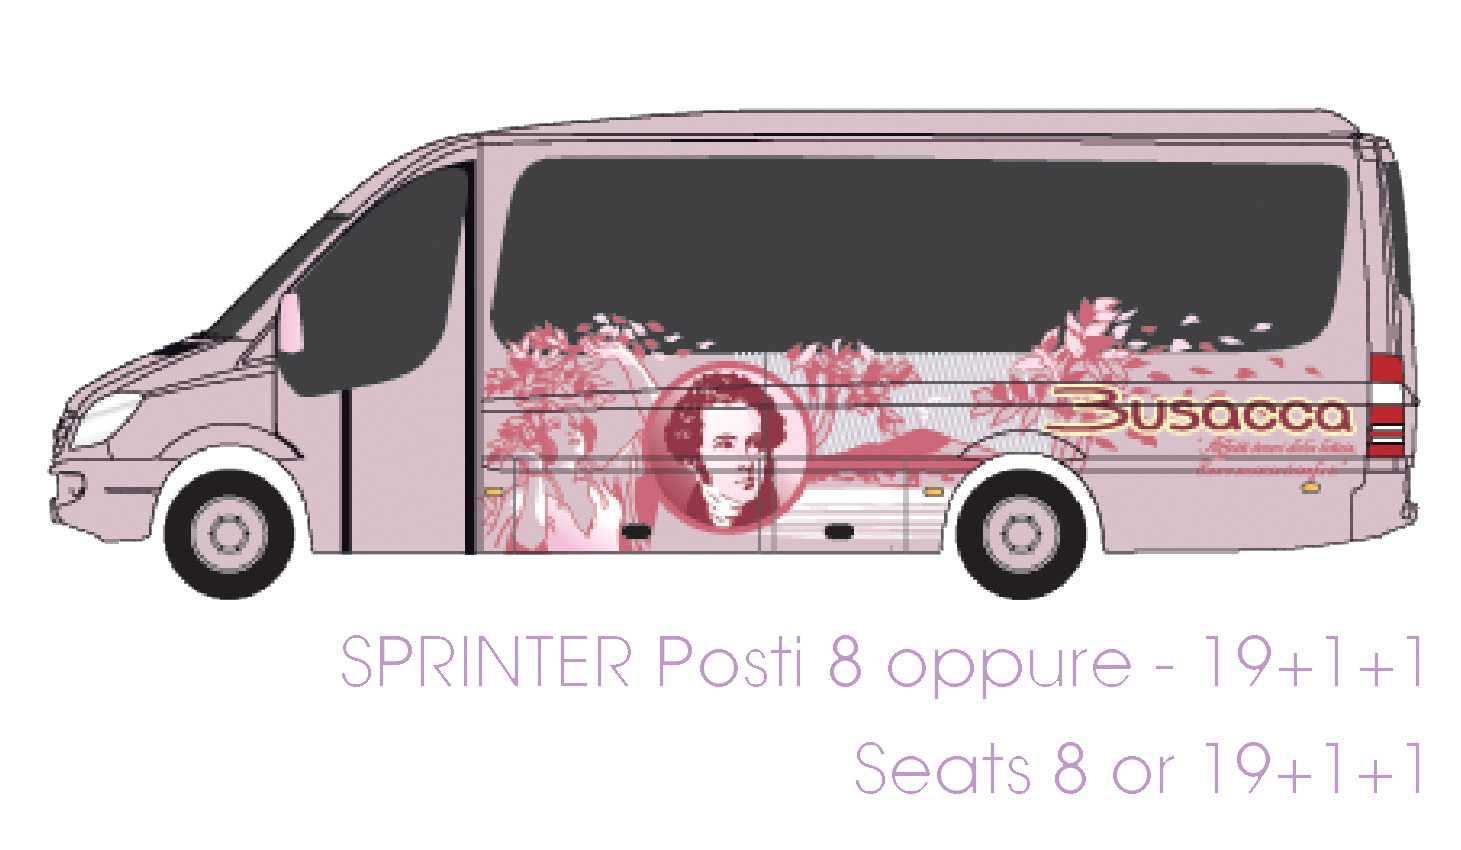 busacca bus flotta minibus mercedes sprinter